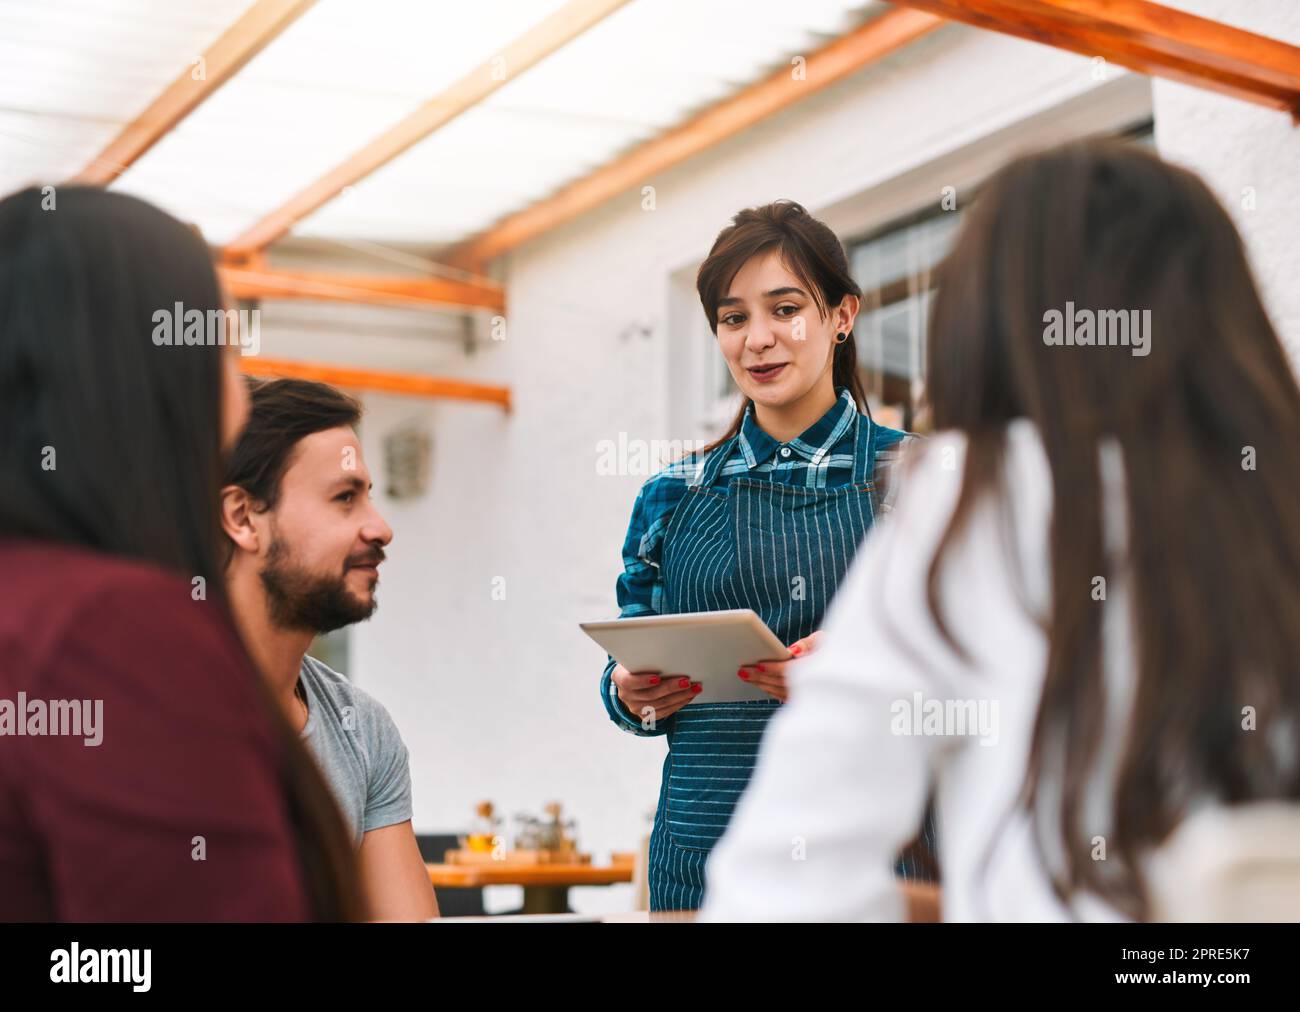 Cosa avrete oggi? un gruppo allegri giovani colleghi d'affari che ordinano cibo e bevande da un cameriere mentre si siedono in un ristorante. Foto Stock